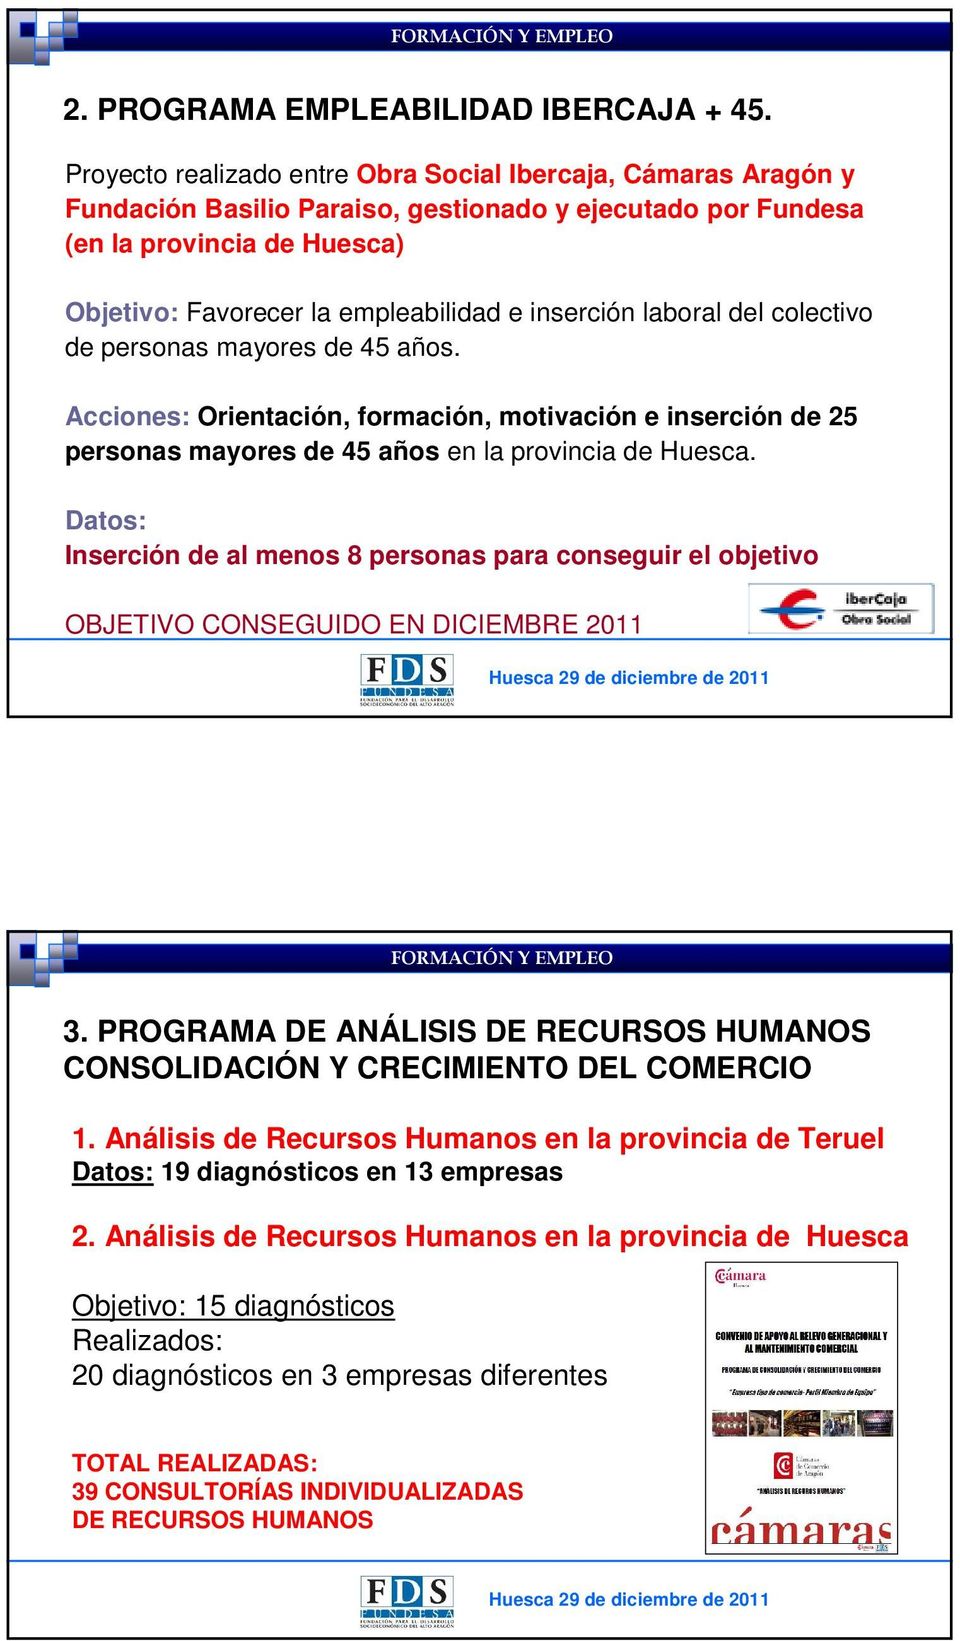 inserción laboral del colectivo de personas mayores de 45 años. Acciones: Orientación, formación, motivación e inserción de 25 personas mayores de 45 años en la provincia de Huesca.